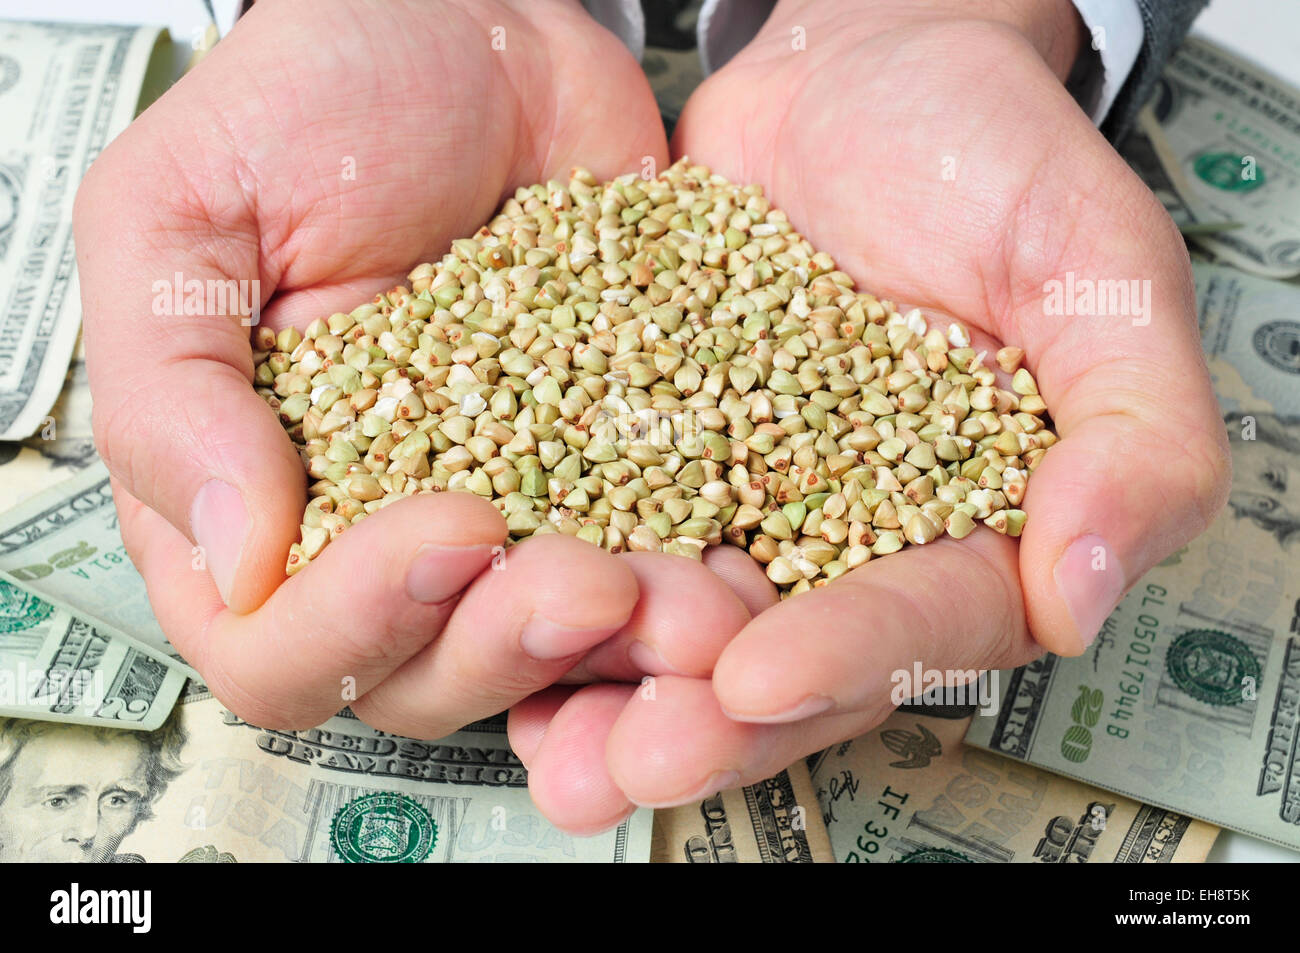 Primer plano de un montón de trigo sarraceno semillas en las manos de un hombre sobre un fondo lleno de billetes de dólar, representando el agronegocio Foto de stock